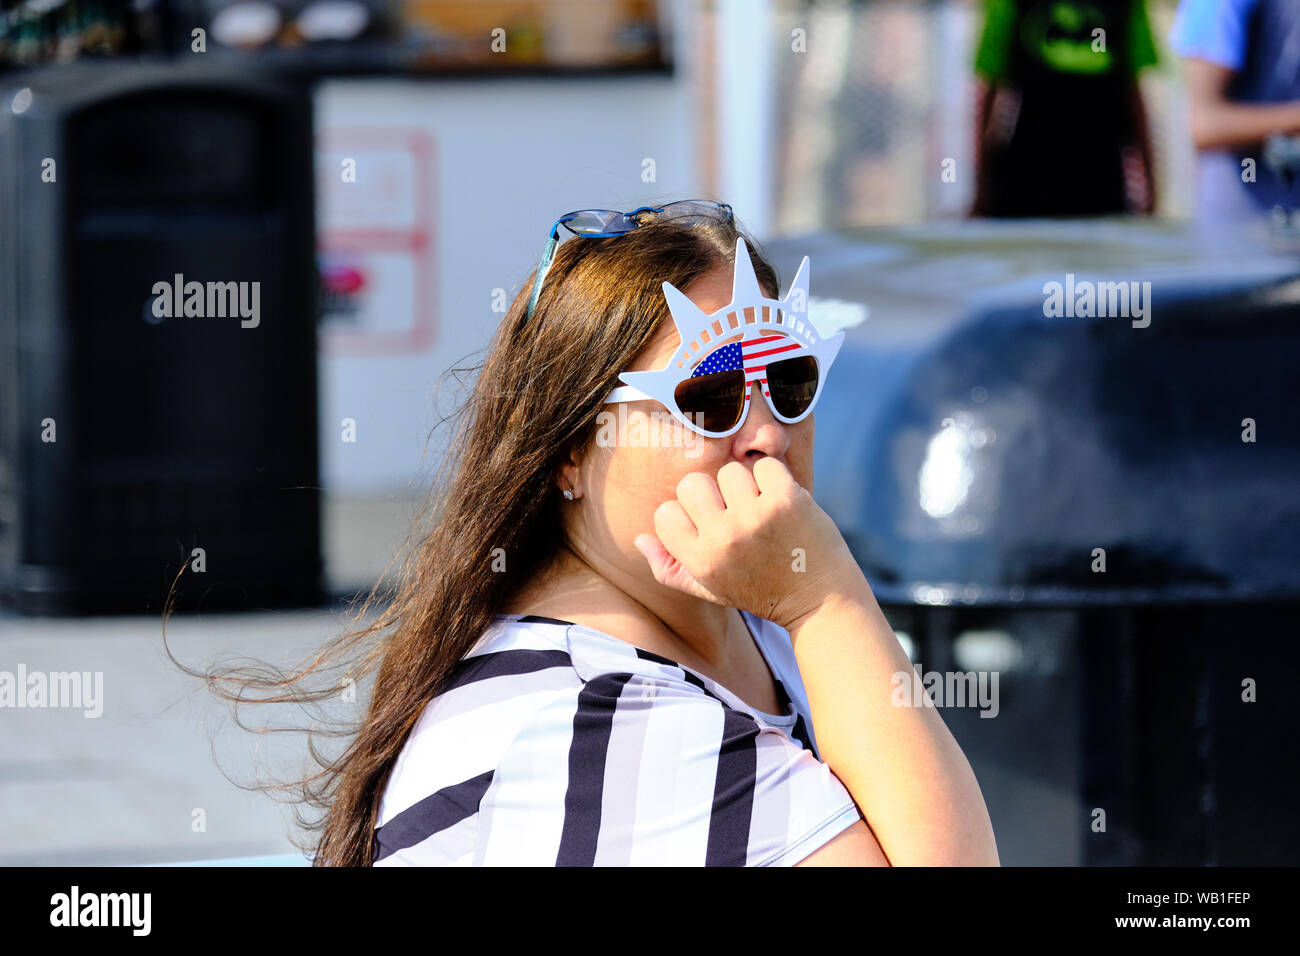 Tourist wearing Statue of Liberty novelty sunglasses. Stock Photo